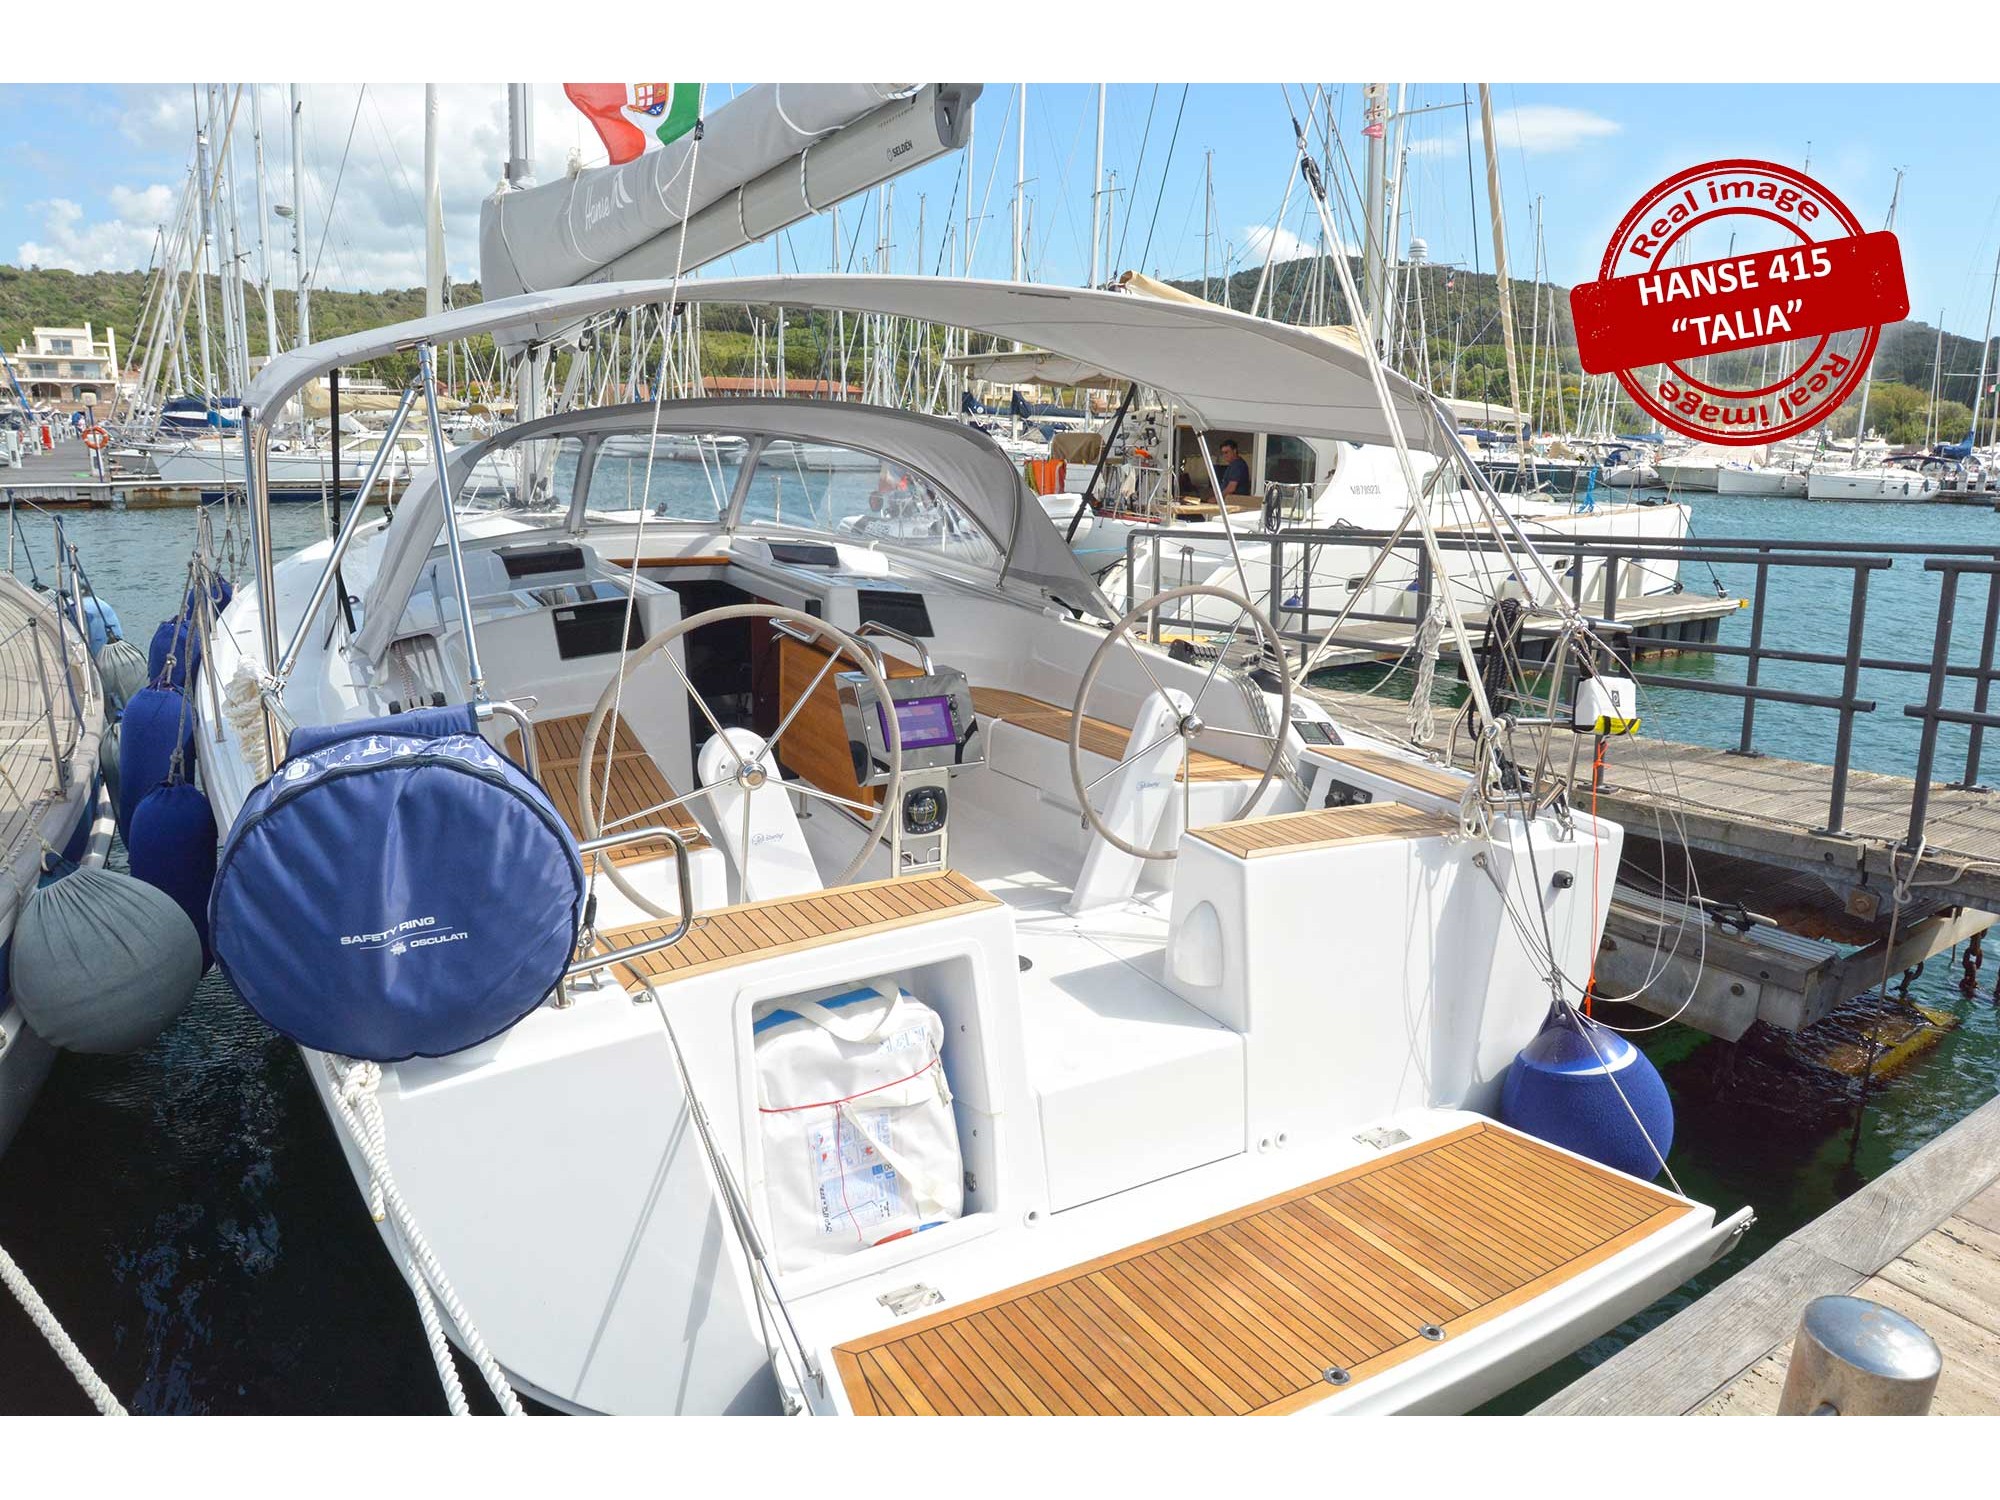 Hanse 415 - Yacht Charter Follonica & Boat hire in Italy Tuscany Follonica Marina di Scarlino 1